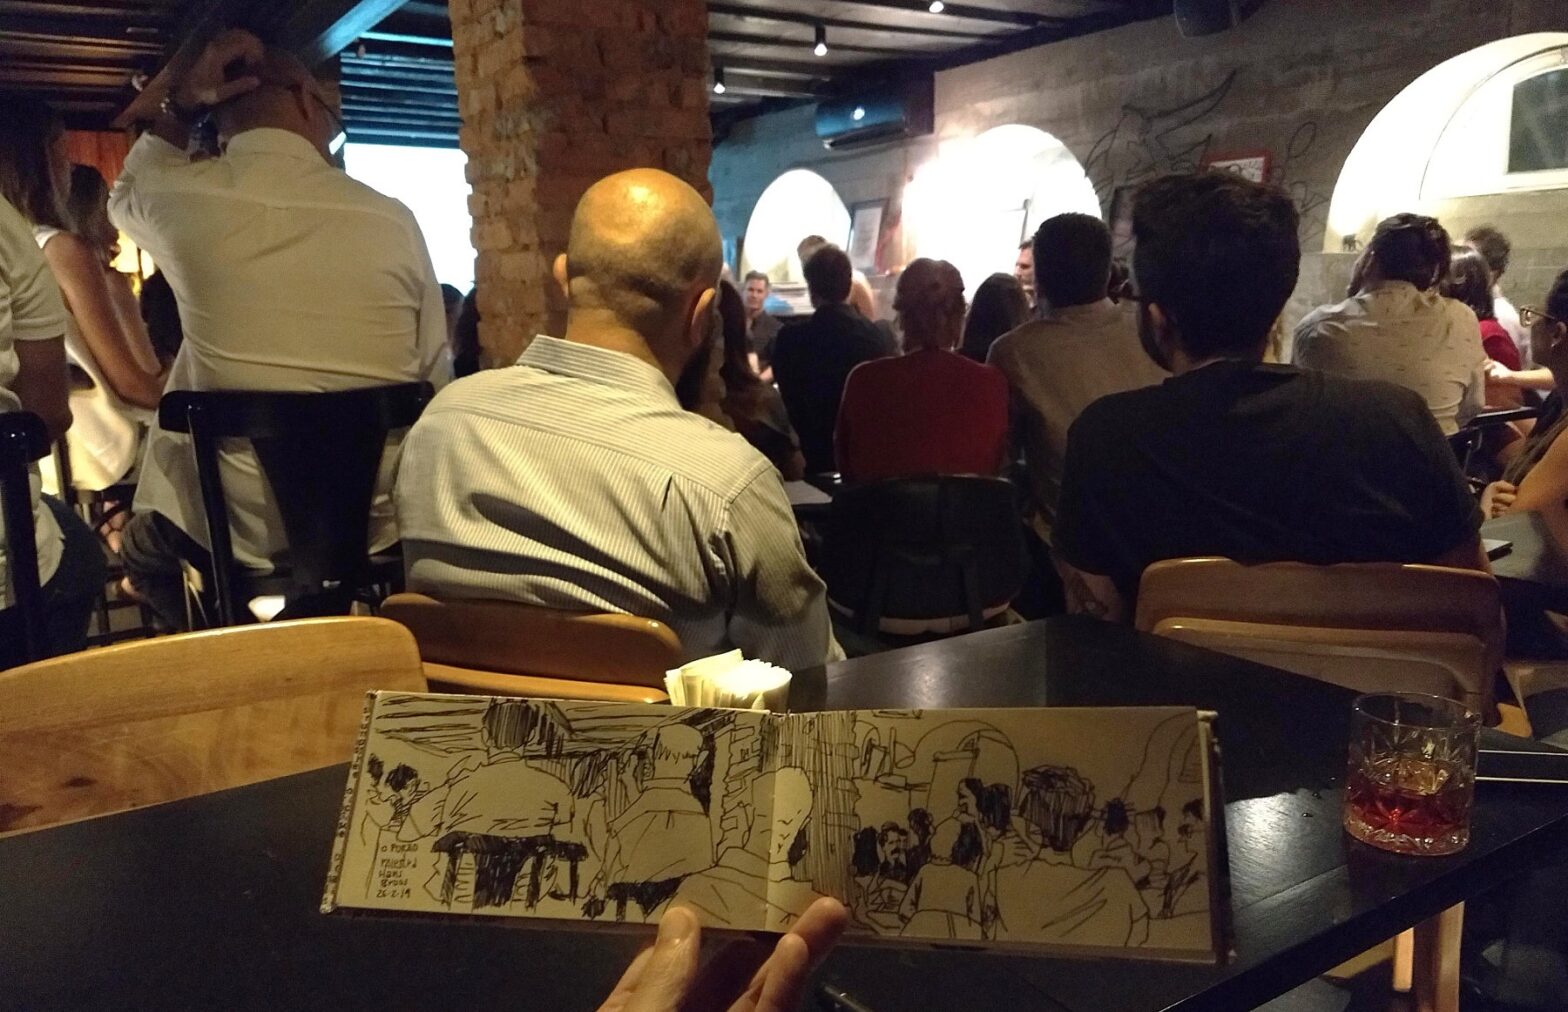 Público do evento no Porão, virado para os palestrantes. Em primeiro plano, caderno horizontal aberto com o desenho